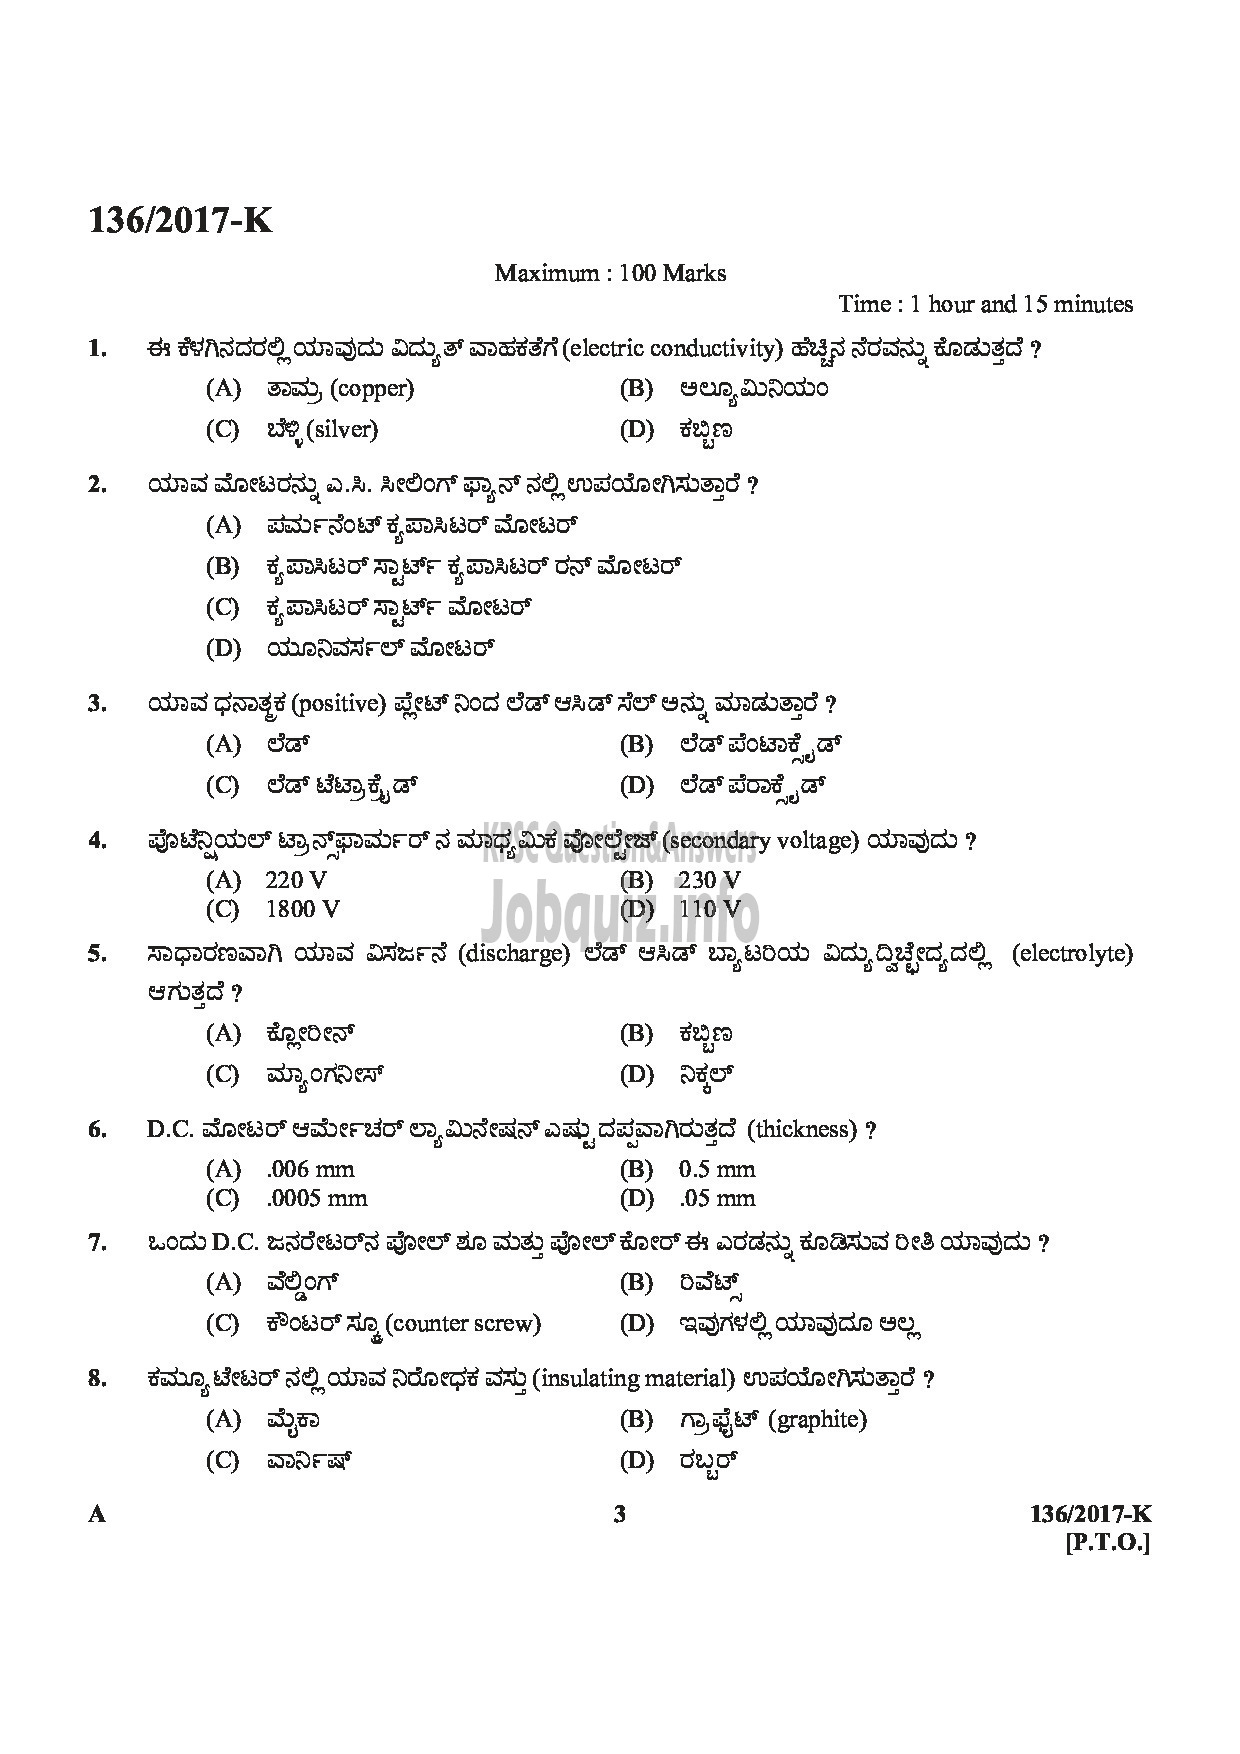 Kerala PSC Question Paper - METER READER/SPOT BILLER SPECIAL RECRUITMENT FROM AMONG ST ONLY MEDIUM OF QUESTION KANNADA-3